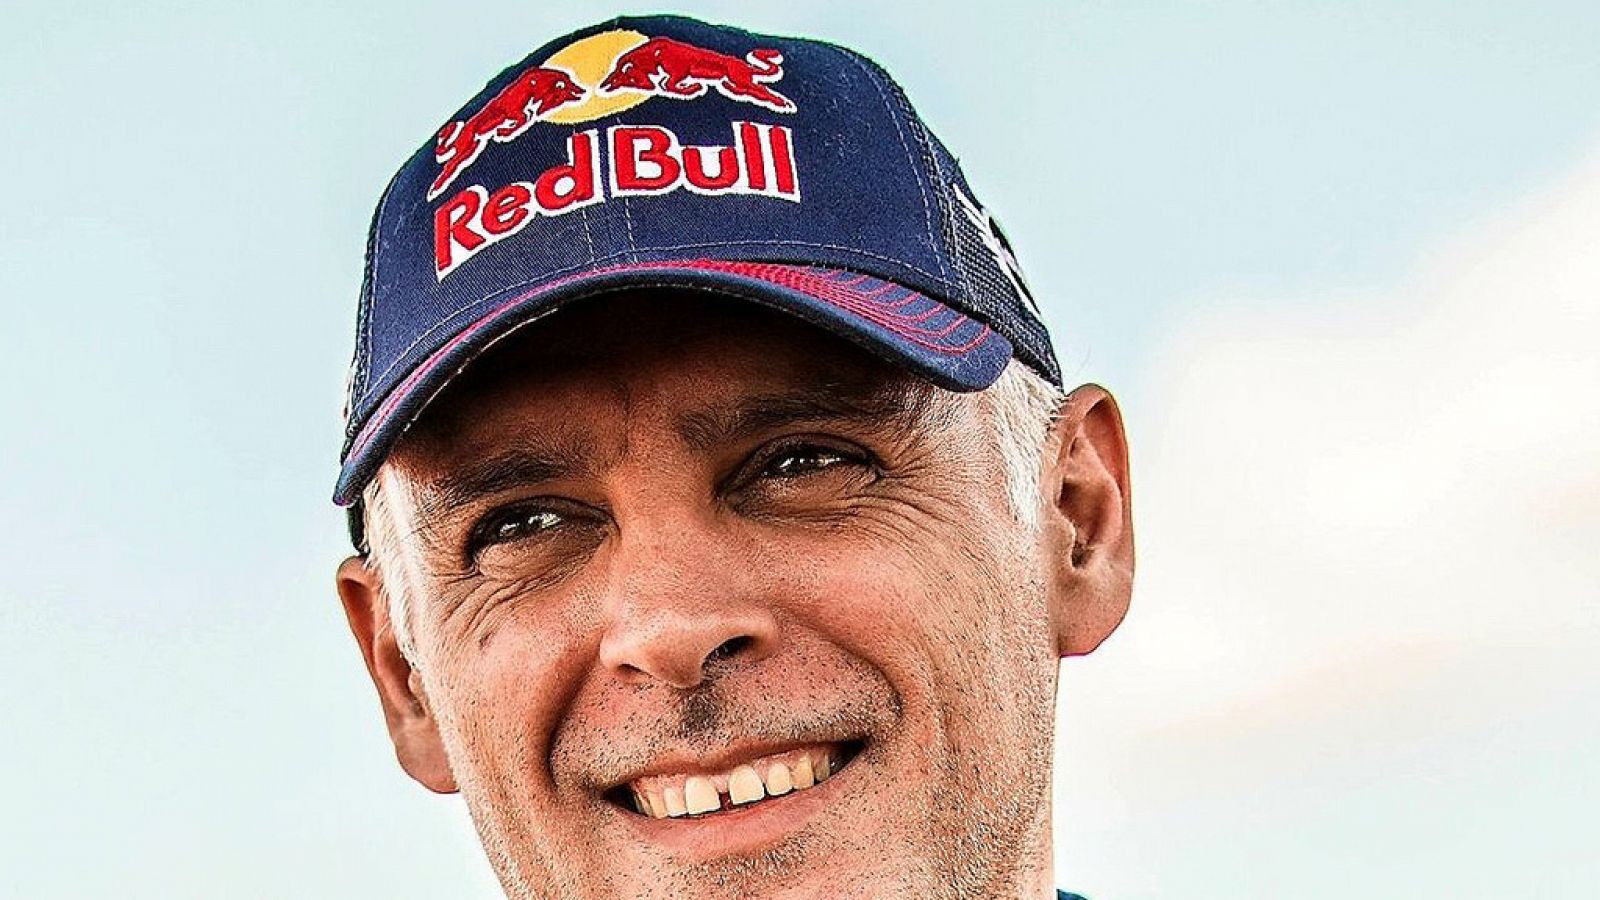 Rally Dakar 2019 | Lucas Cruz, copiloto de Sainz: "Hemos arrastrado toda la semana el problema con el inflado"